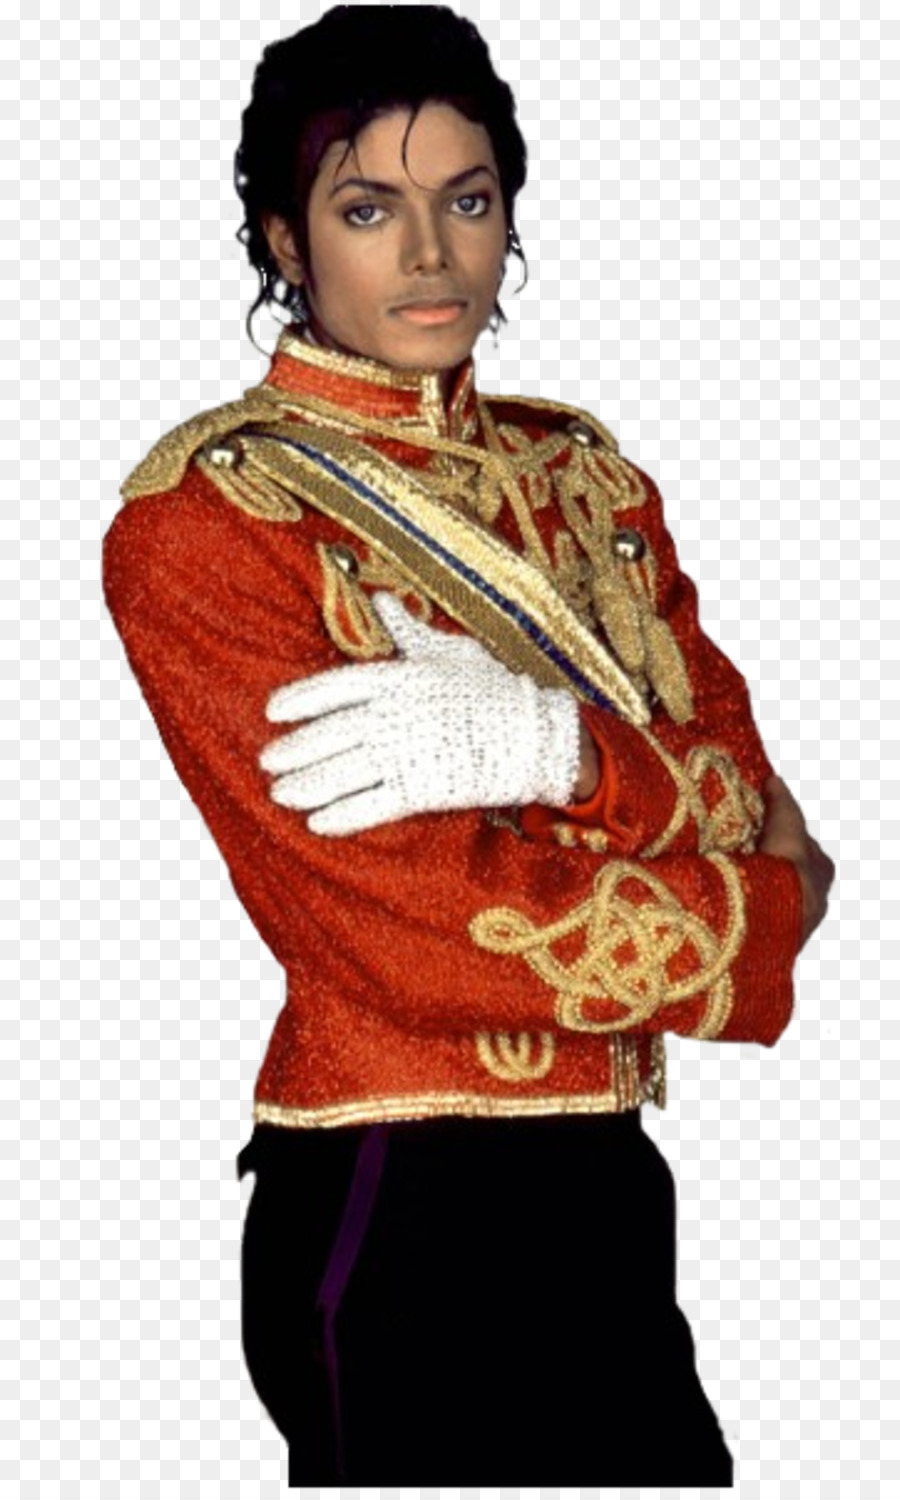 Michael Jackson Vua của Bật nhạc Sĩ - Michael Jackson